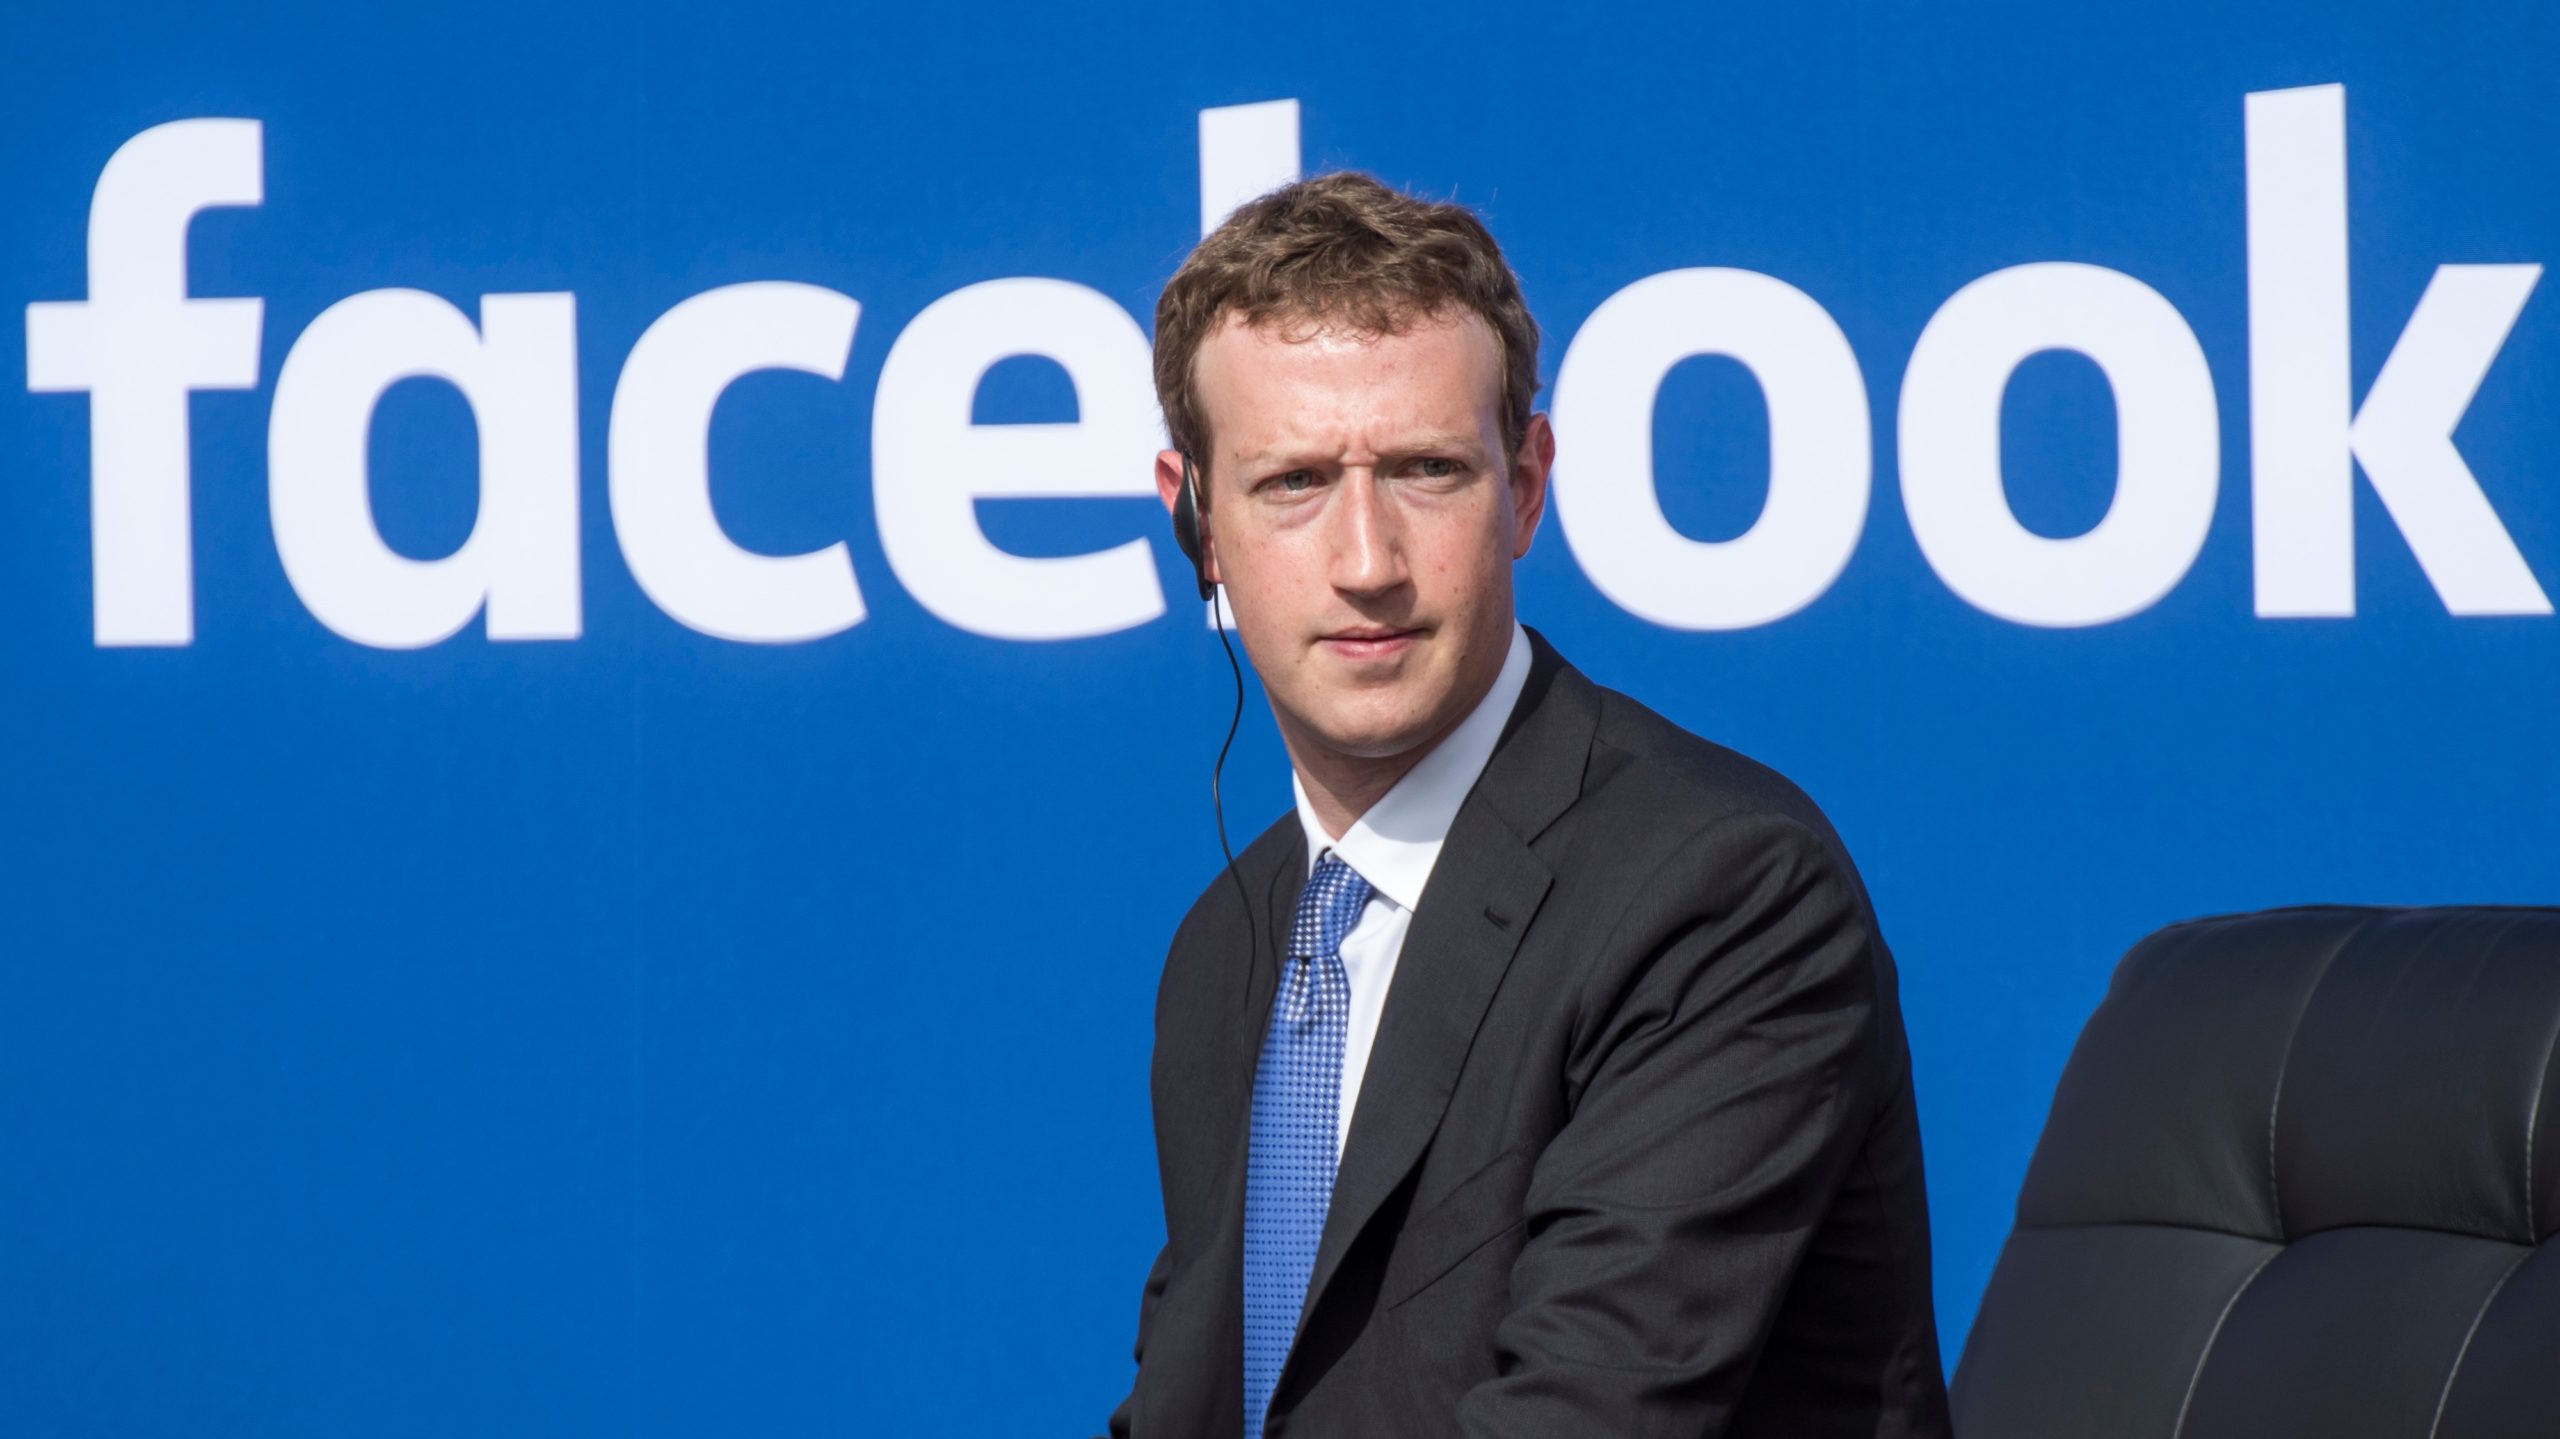 Επικό τρολάρισμα του Guardian στον Ζούκερμπεργκ για τα σκάνδαλα με το Facebook – ΒΙΝΤΕΟ